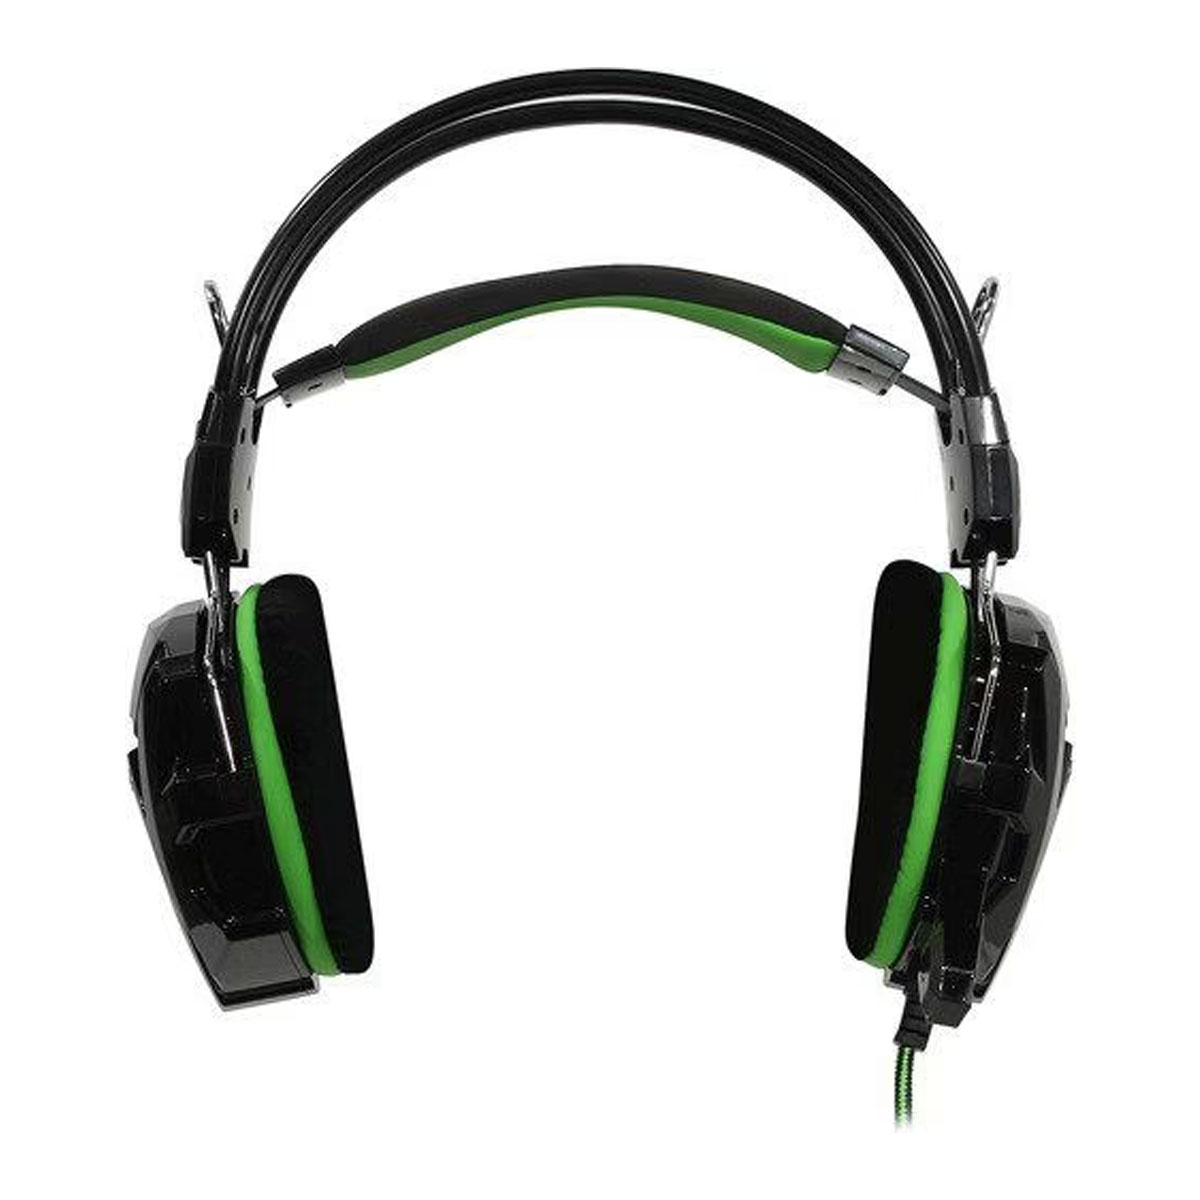 Игровая гарнитура (наушники с микрофоном) проводная полноразмерная SMARTBUY SBHG-1200, цвет черно зеленый